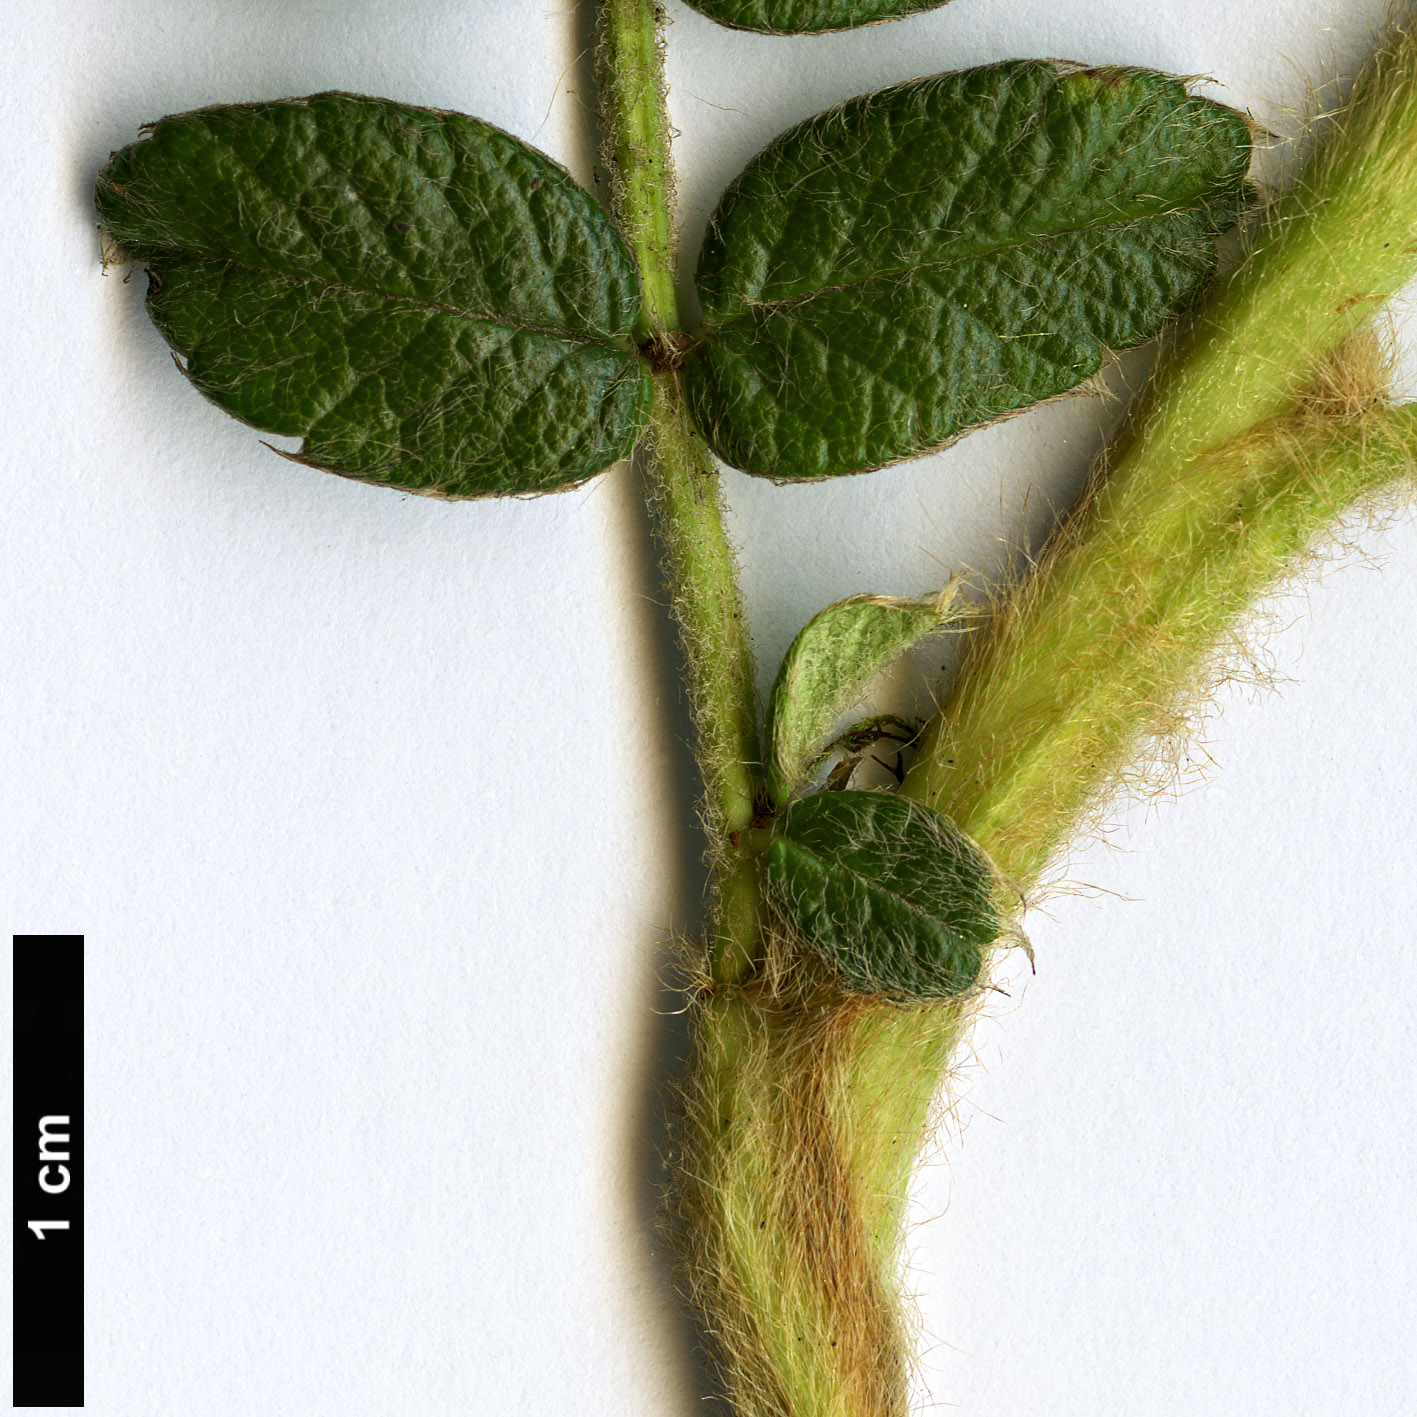 High resolution image: Family: Rosaceae - Genus: Polylepis - Taxon: quadrijuga